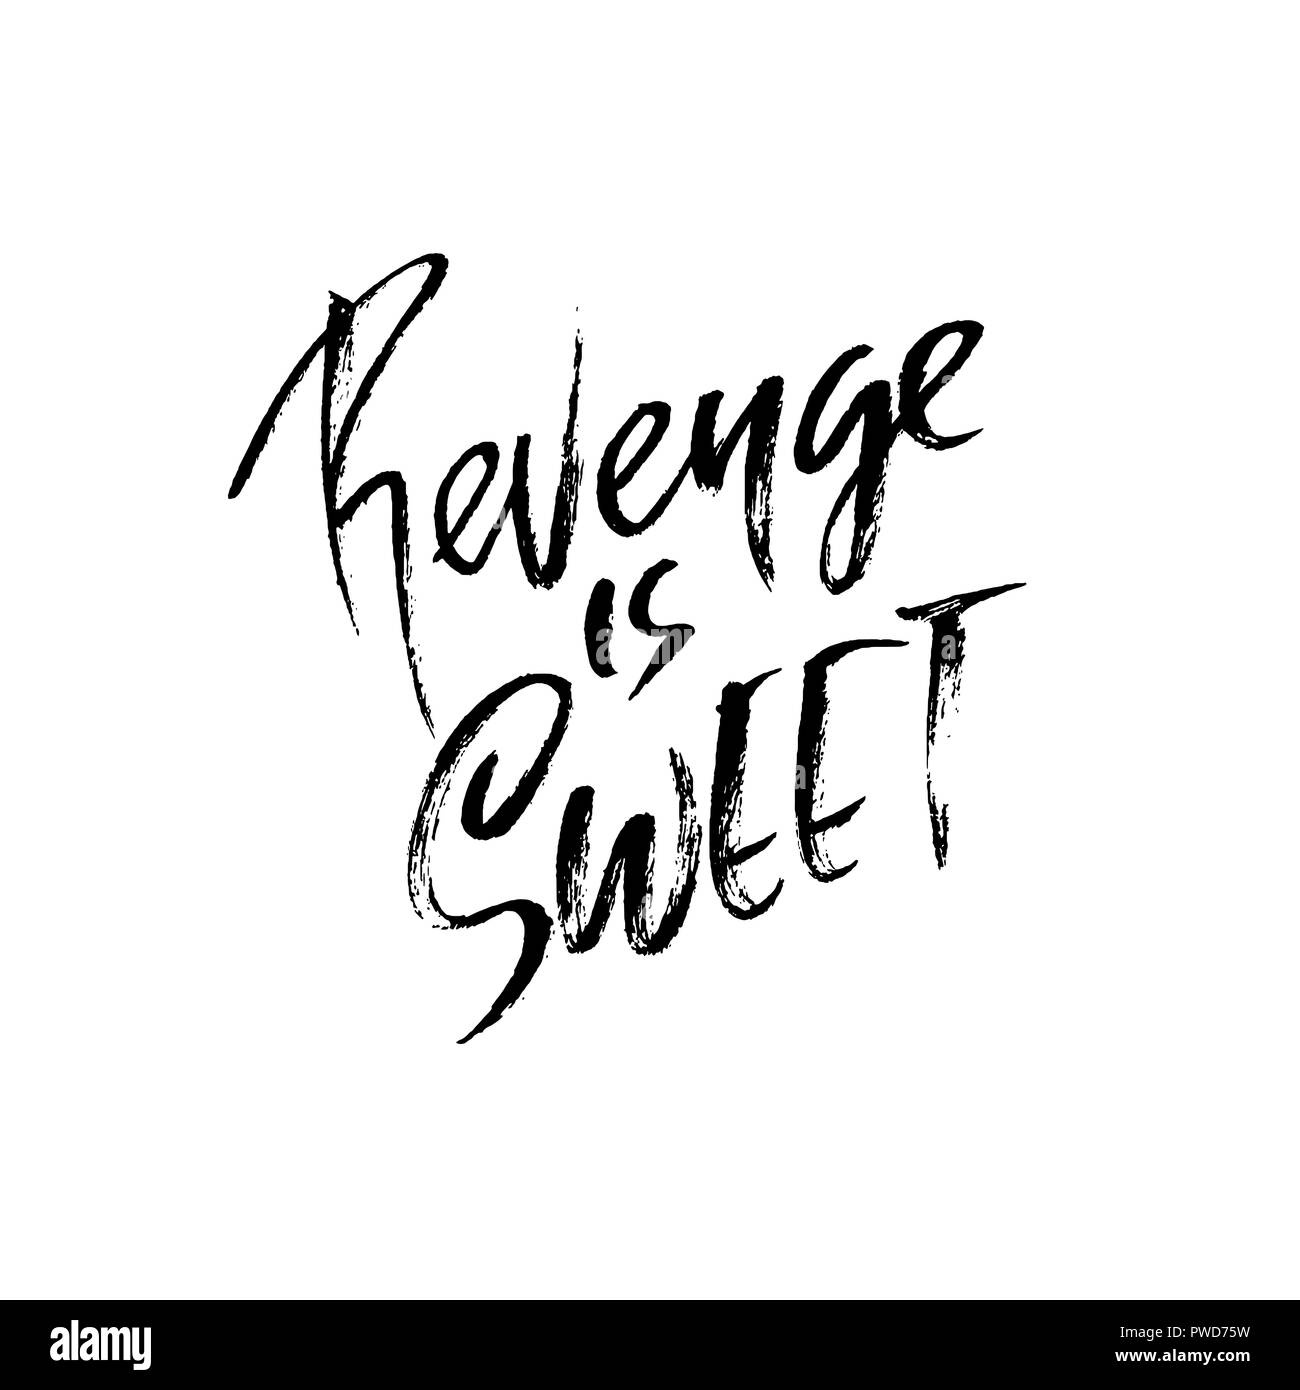 Revenge is sweet. Hand drawn dry brush lettering. Ink illustration. Modern calligraphy phrase. Vector illustration. Stock Vector